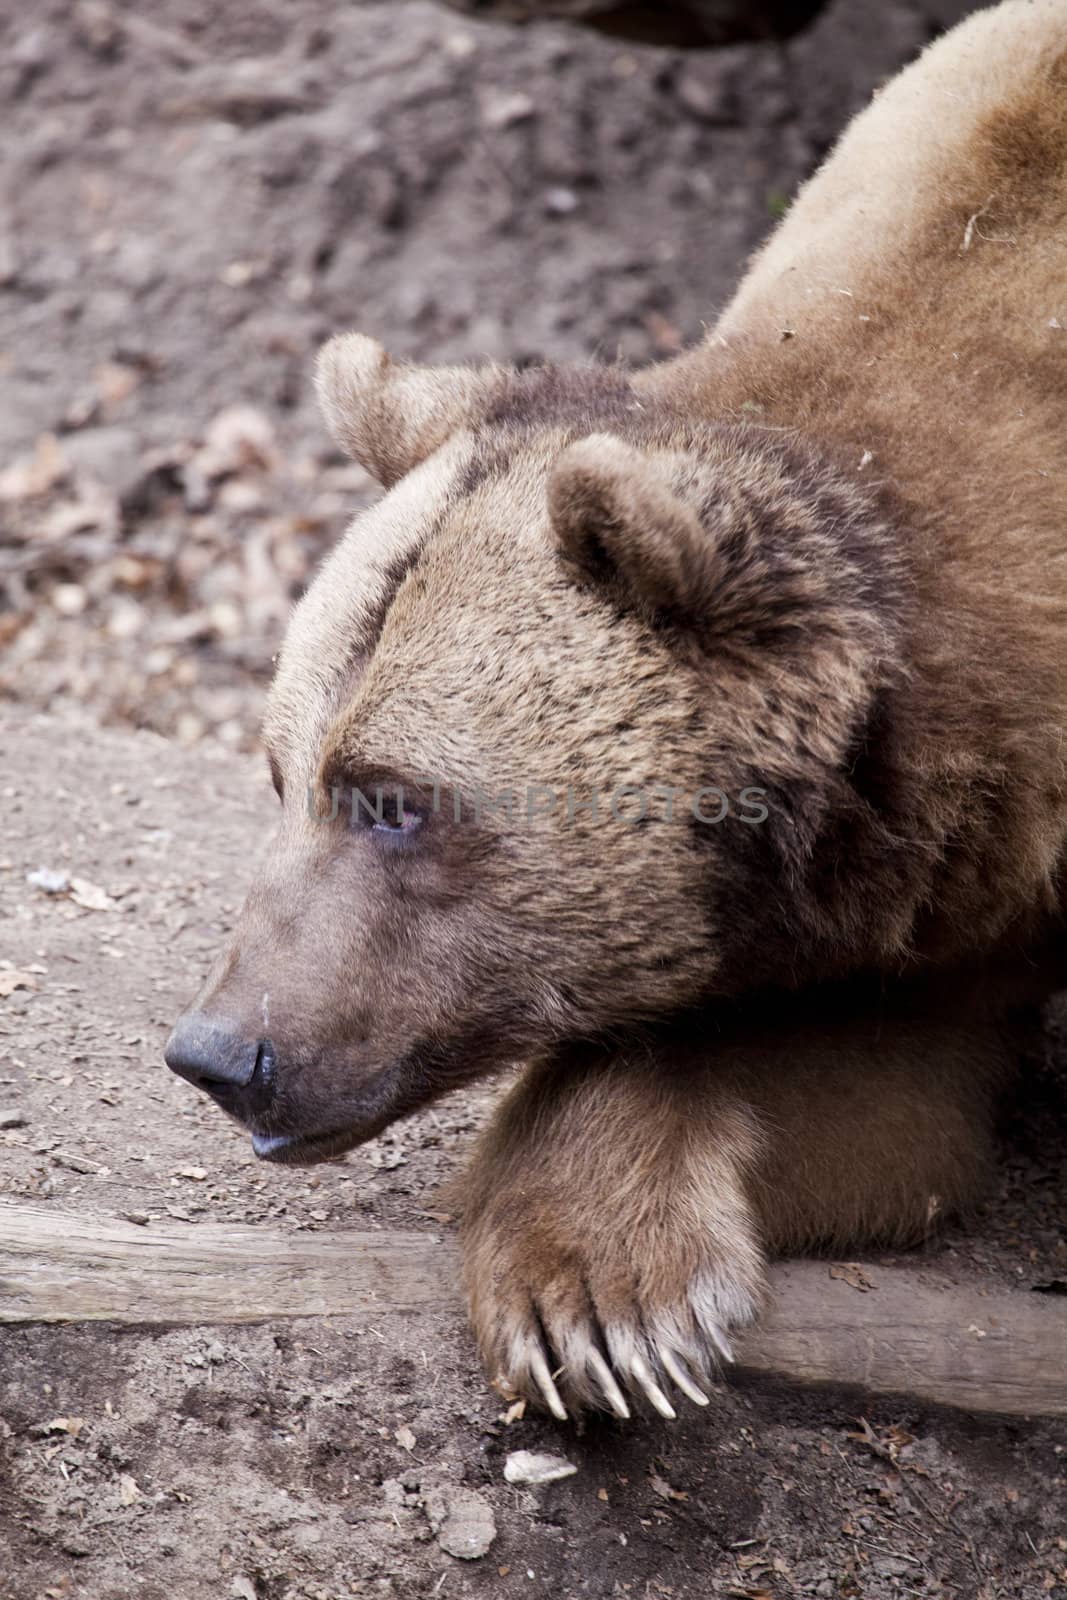 Brown bear close up